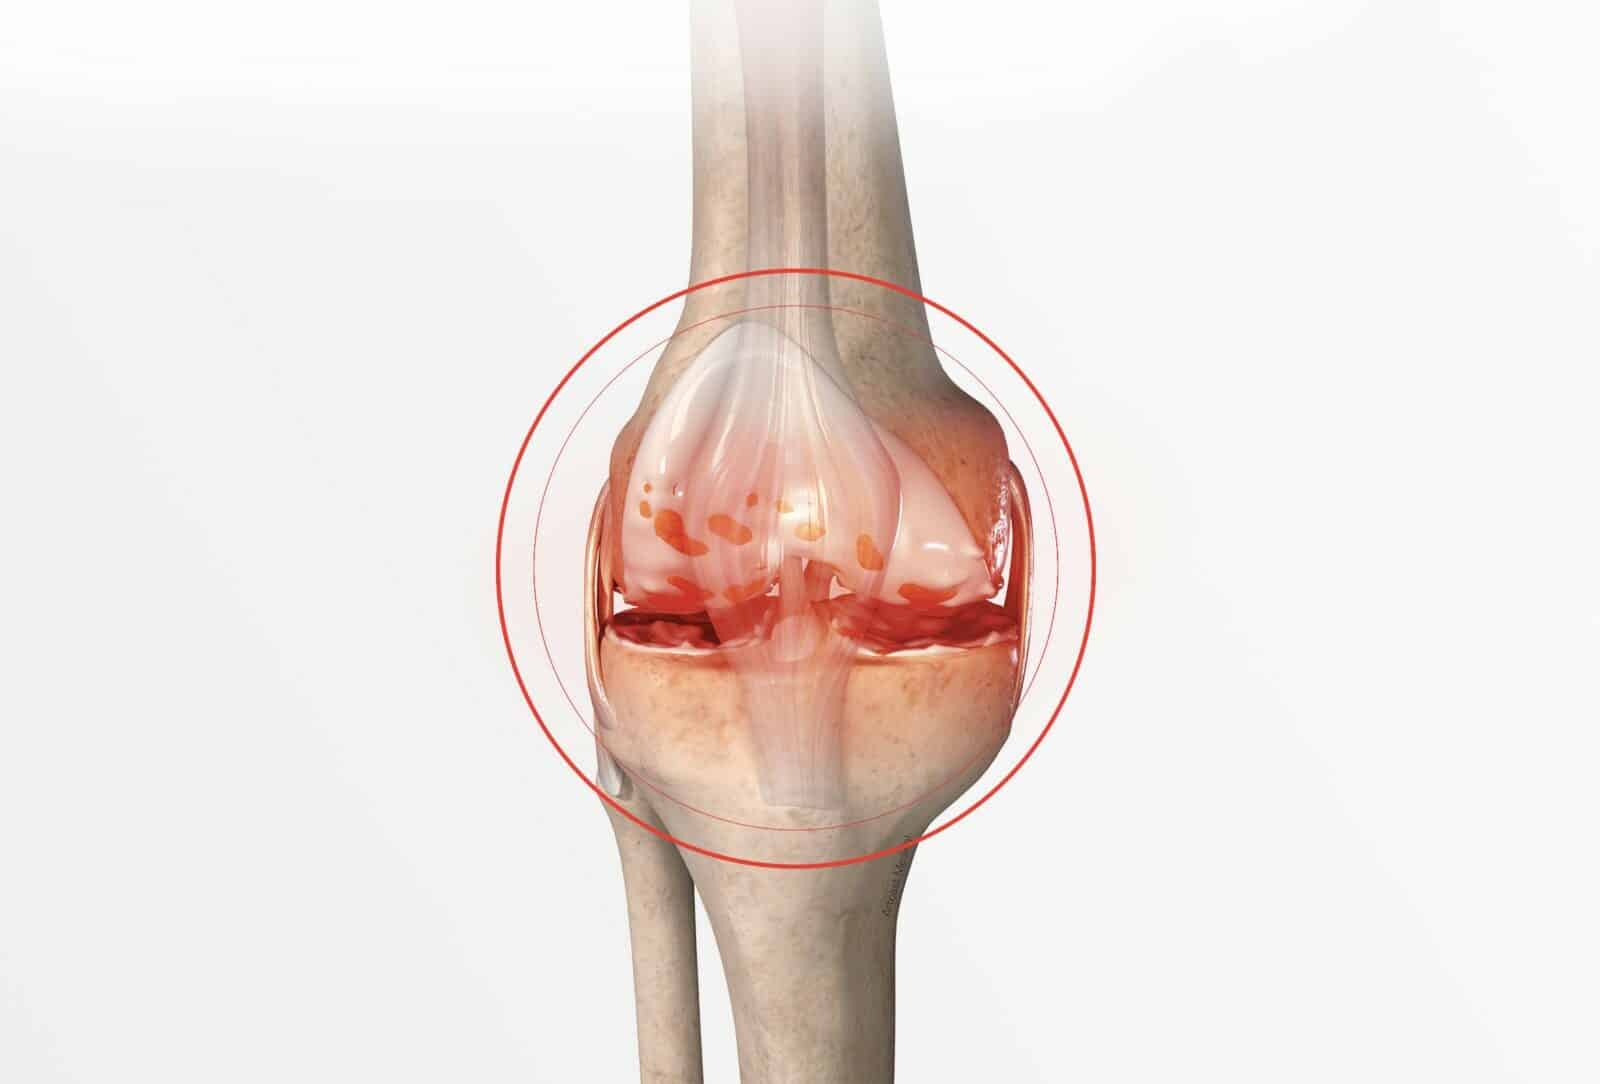 Chirurgie du genou à Paris: Ostéotomie tibiale de valgisation - Dr Paillard